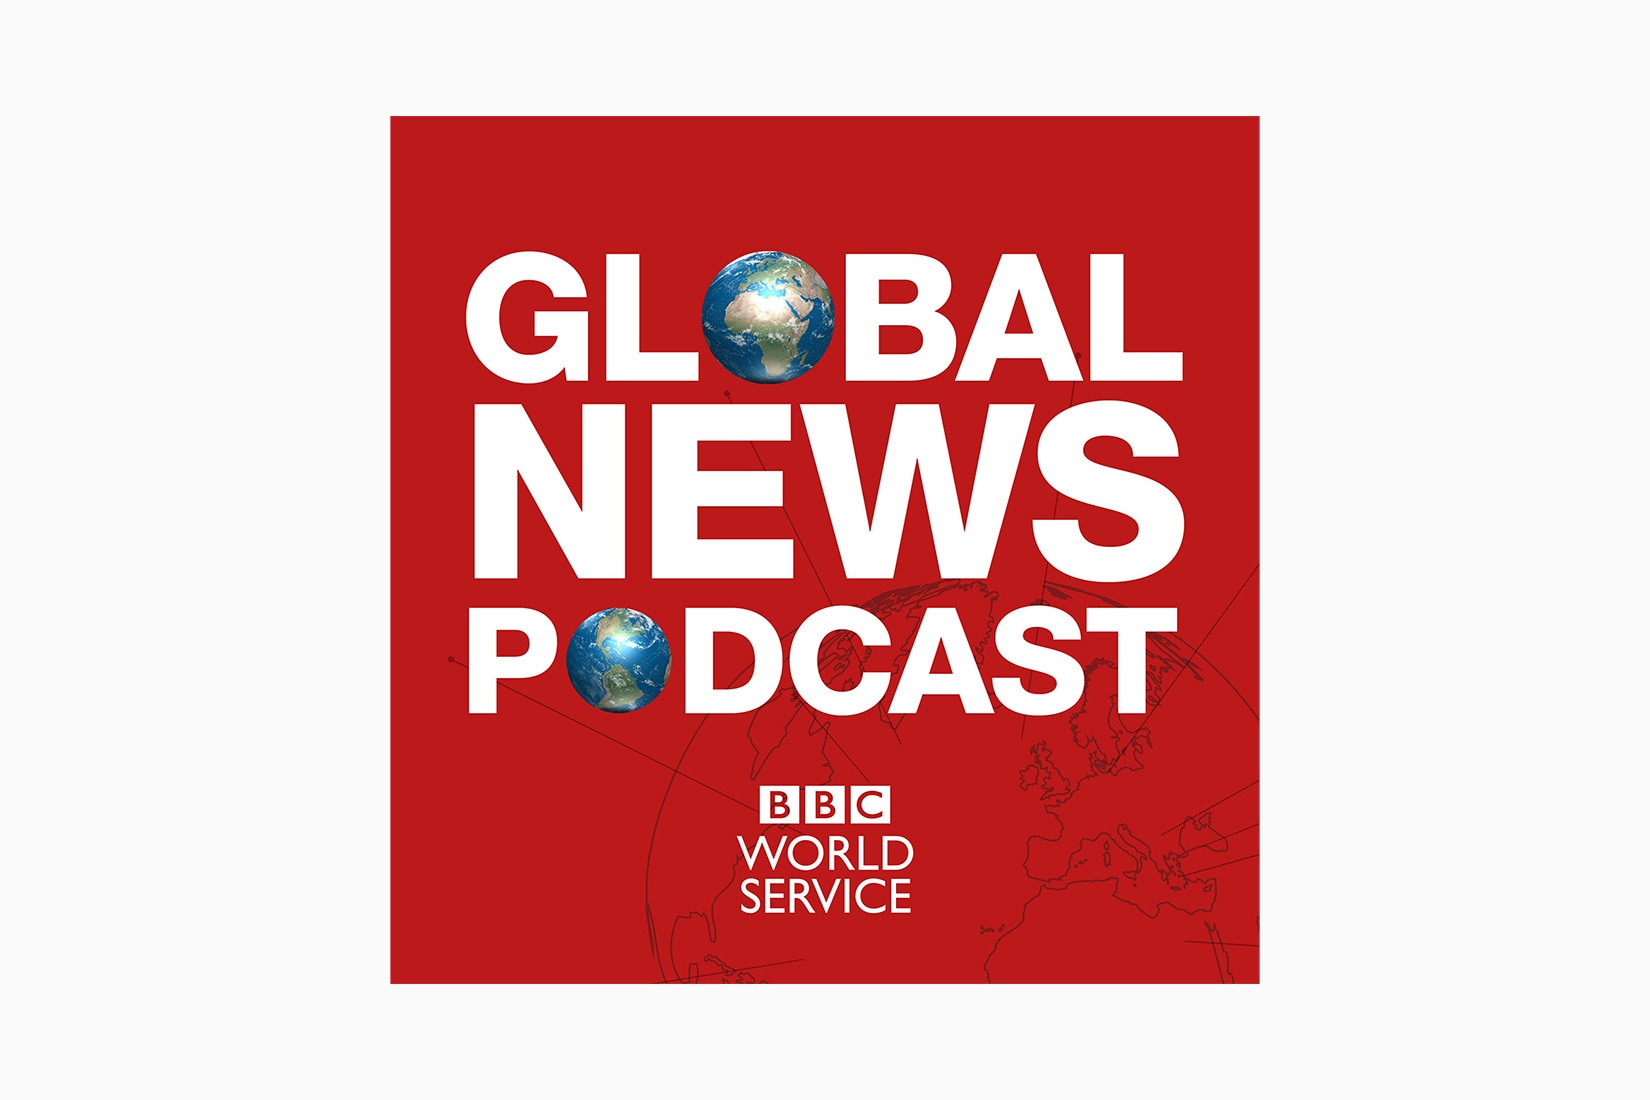 meilleurs podcasts nouvelles mondiales BBC luxe digital